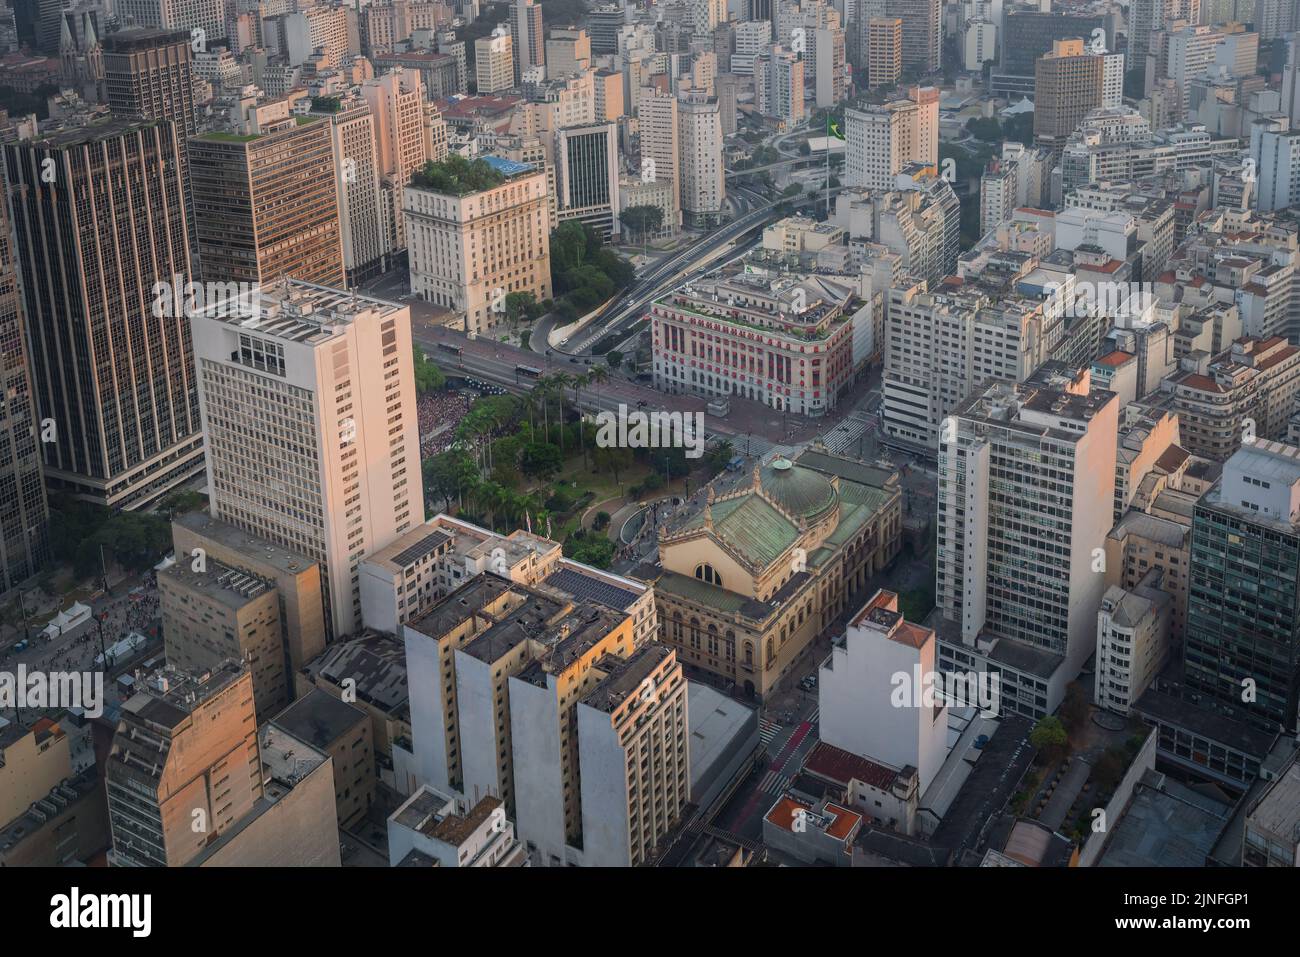 Luftaufnahme des historischen Stadtzentrums von Sao Paulo mit Vale do Anhangabau, Viaduto do Cha und Stadttheater - Sao Paulo, Brasilien Stockfoto